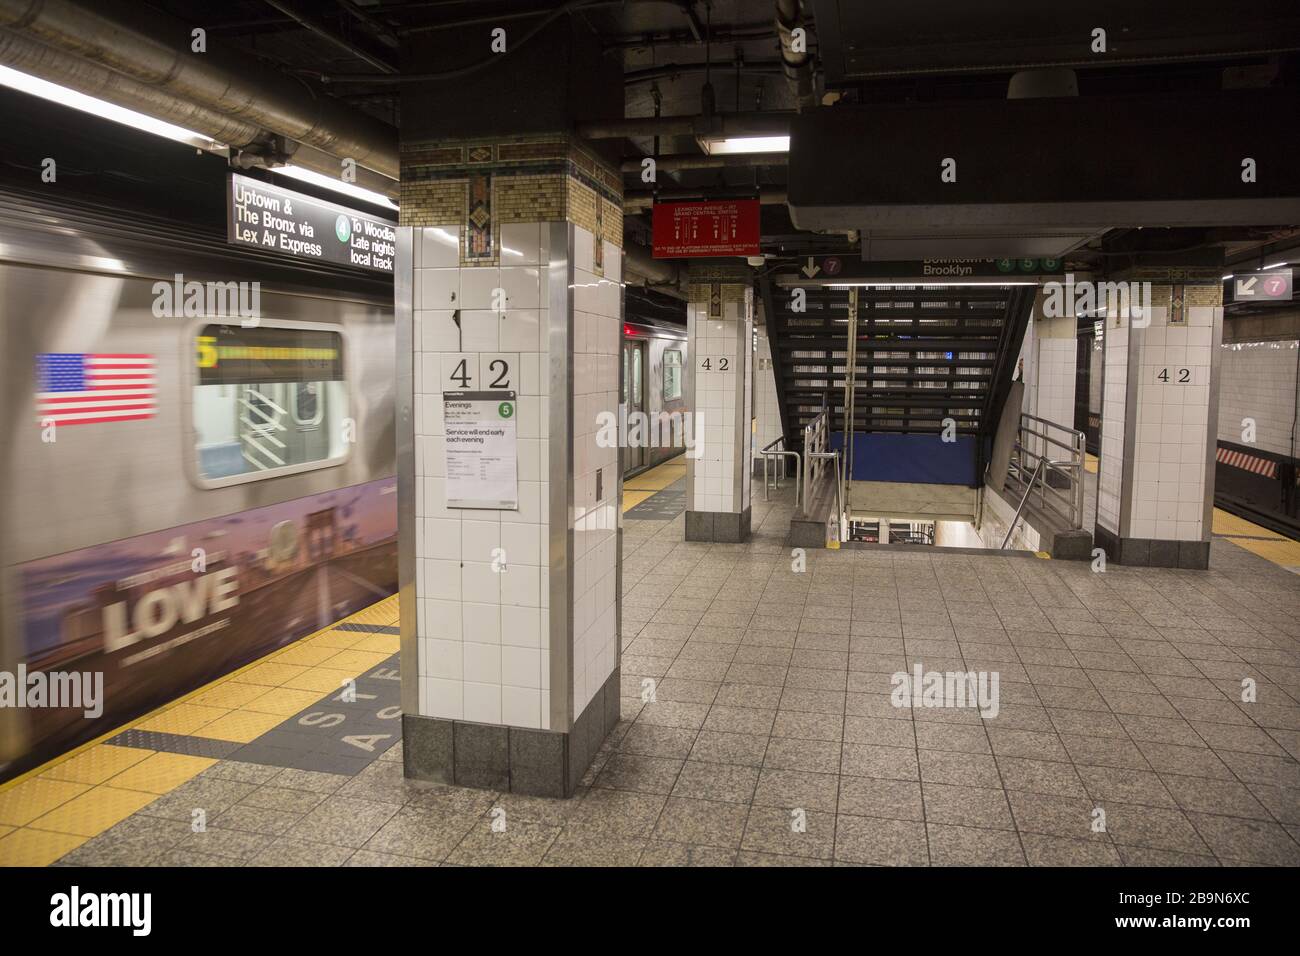 Die U-Bahn-Station Grand Central 42nd Street, die normalerweise immer besetzt ist, steht heute mit dem Aufstieg des Coronavirus und der Sperrung in New York meist leer. Stockfoto